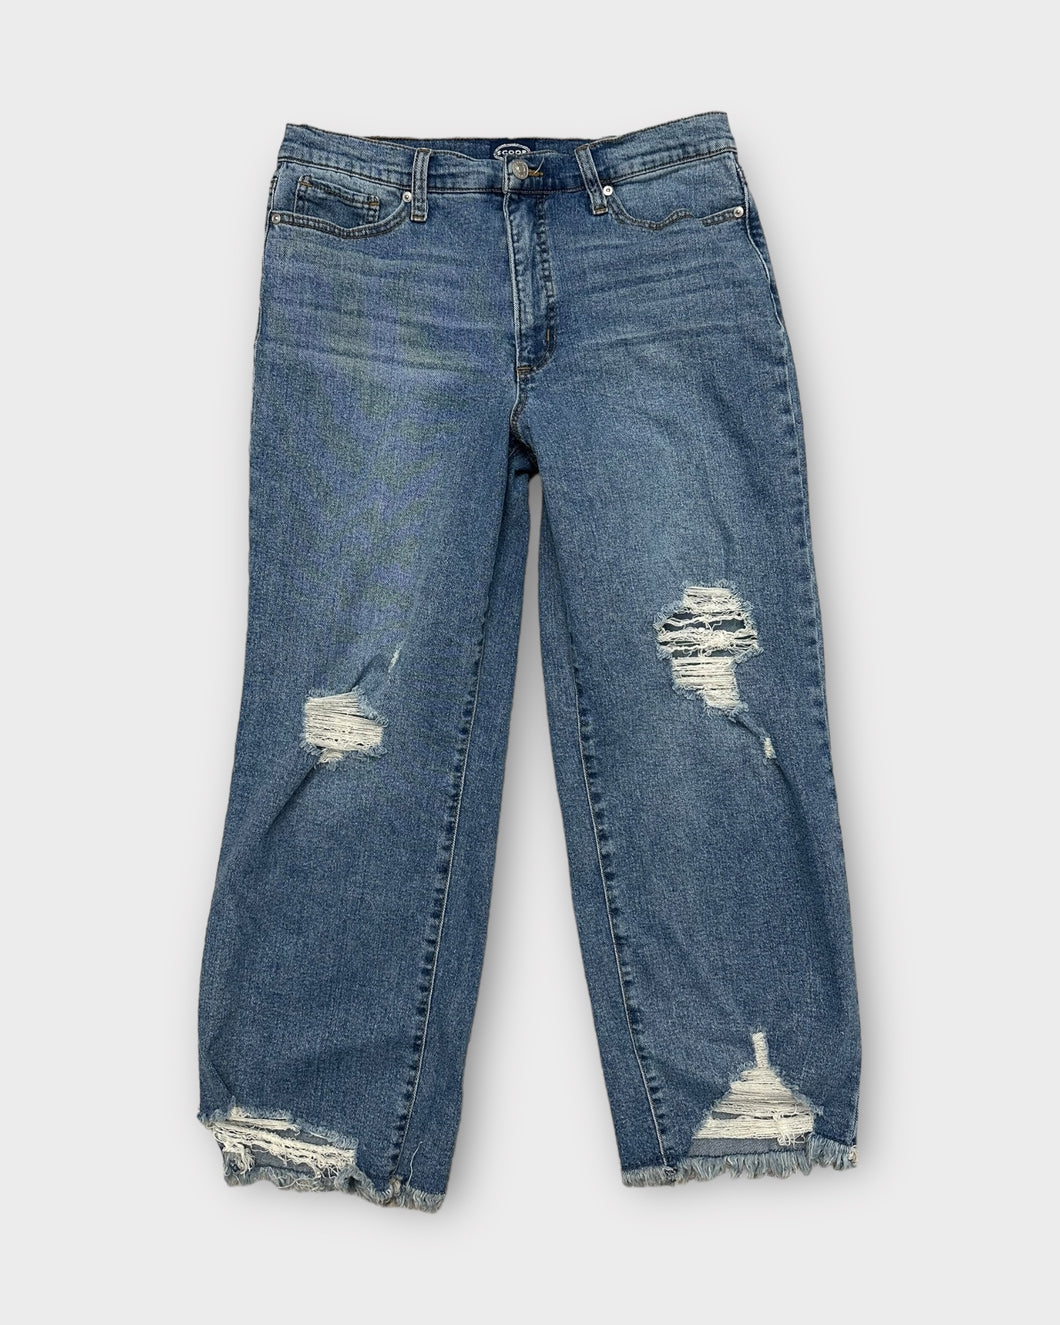 Scoop Slim Ankle Medium-Dark Wash Distressed Jeans (10)